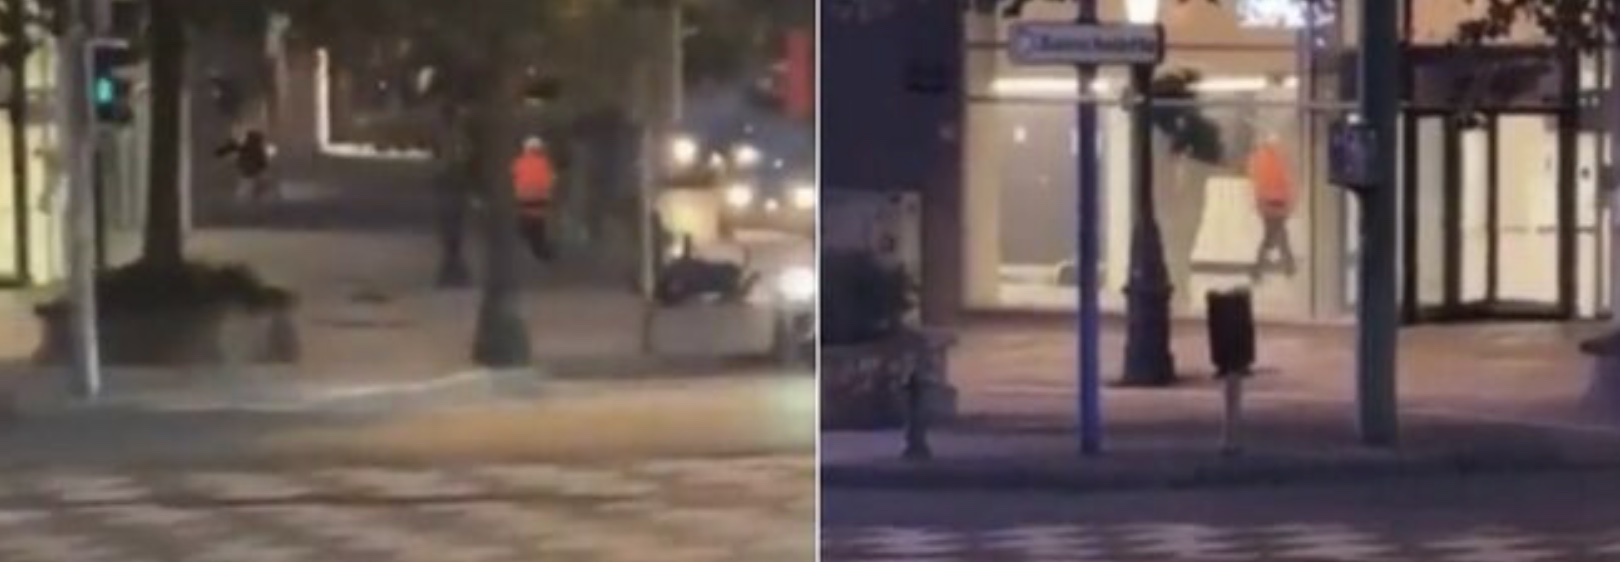 Schießerei in Brüssel, zwei Tote und ein Verletzter: Wir verfolgen die Spur des Terroristen